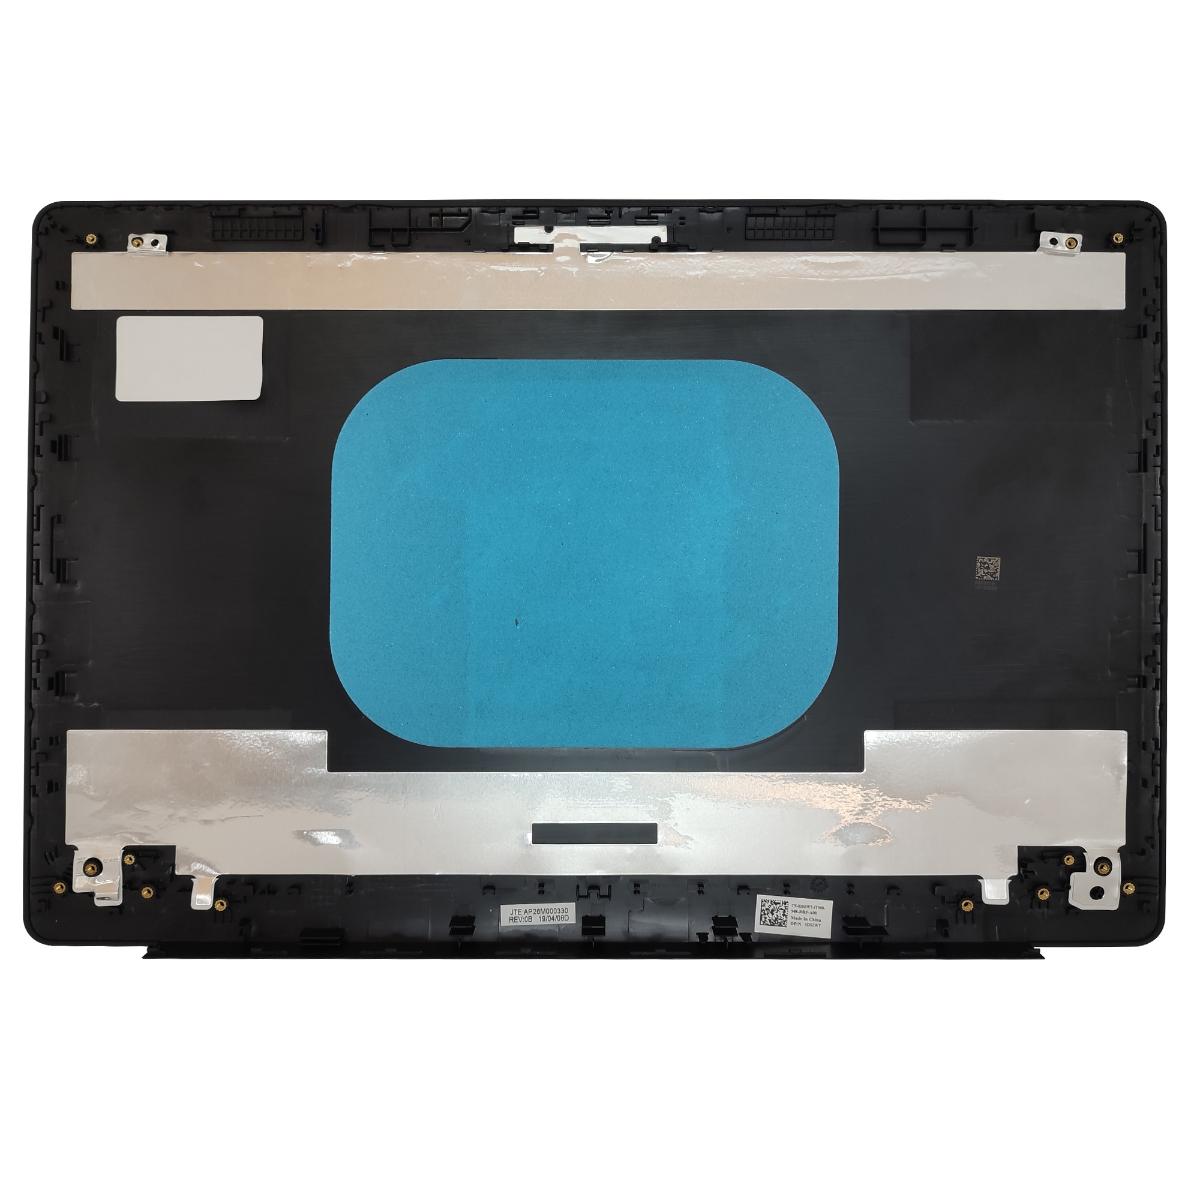 Πλαστικό Laptop - Cover A - DELL G3 3579 156PD 15PR 15GD Lcd Back Cover Rear Lid Black 0DH3WT (Κωδ. 1-COV421)